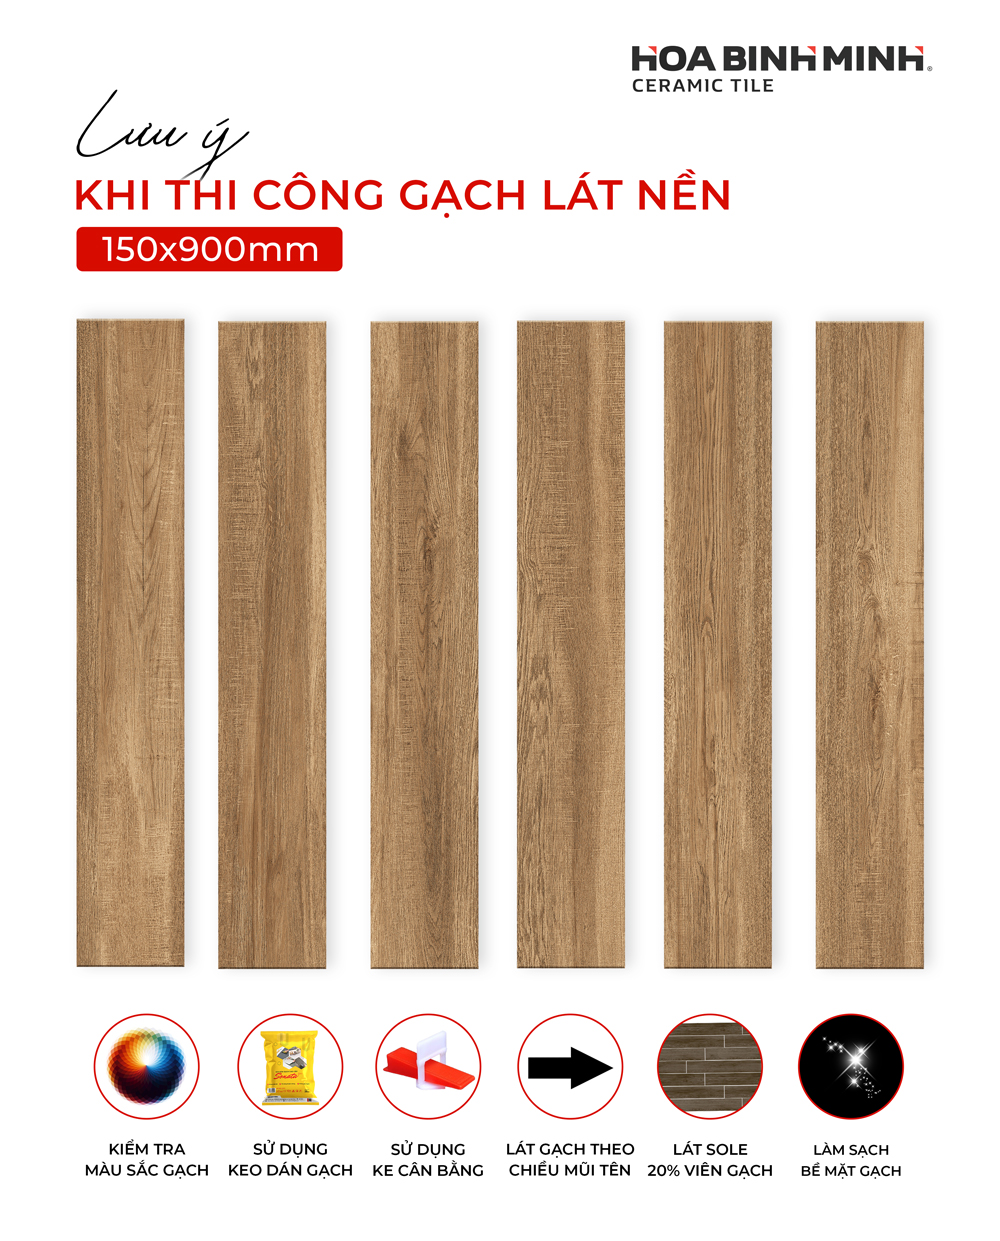 Những lưu ý khi thi công gạch thanh vân gỗ 150x900mm Hòa Bình Minh